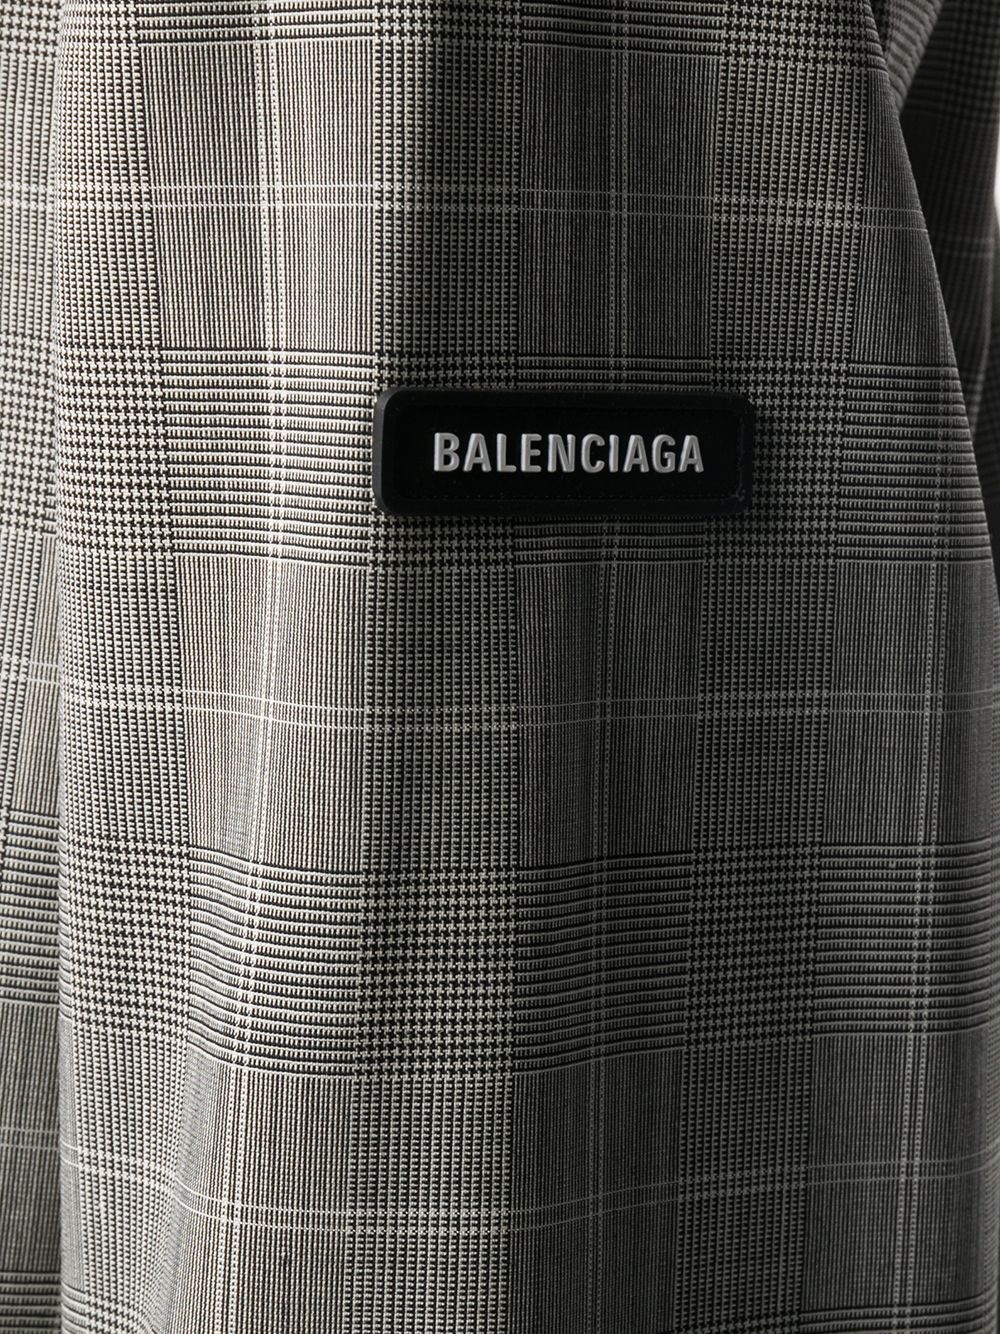 фото Balenciaga однобортный блейзер в клетку